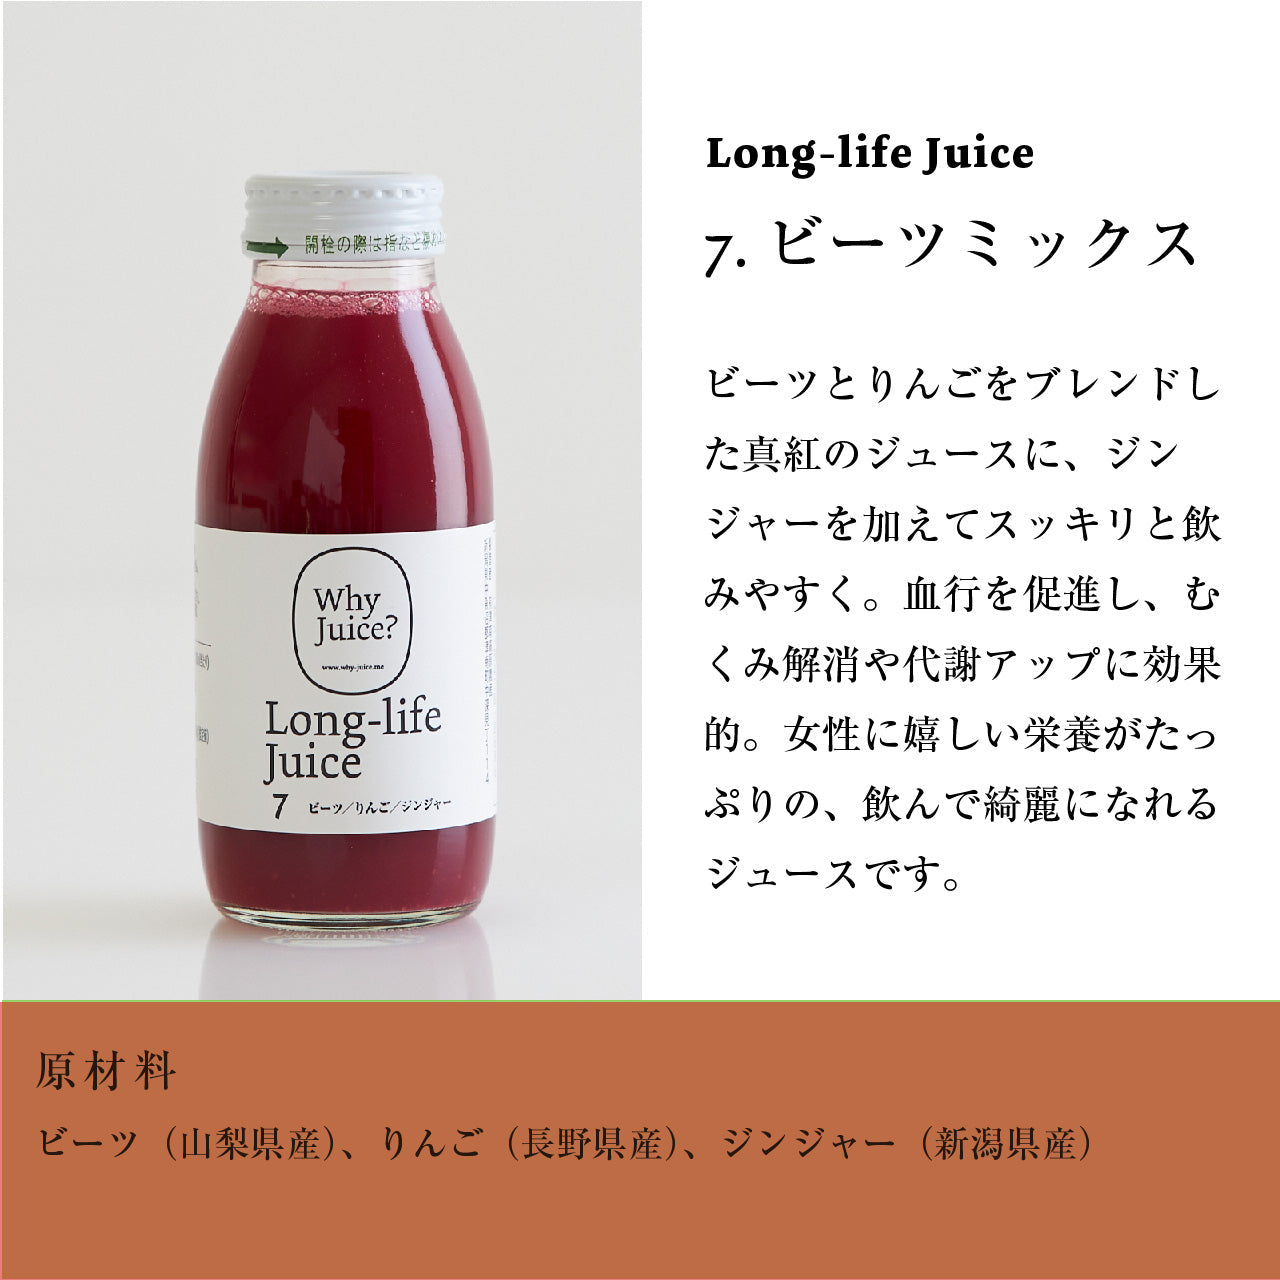 【無添加ジュース】Long-life Juice 12本ギフトボックス(4種類ミックスセット)